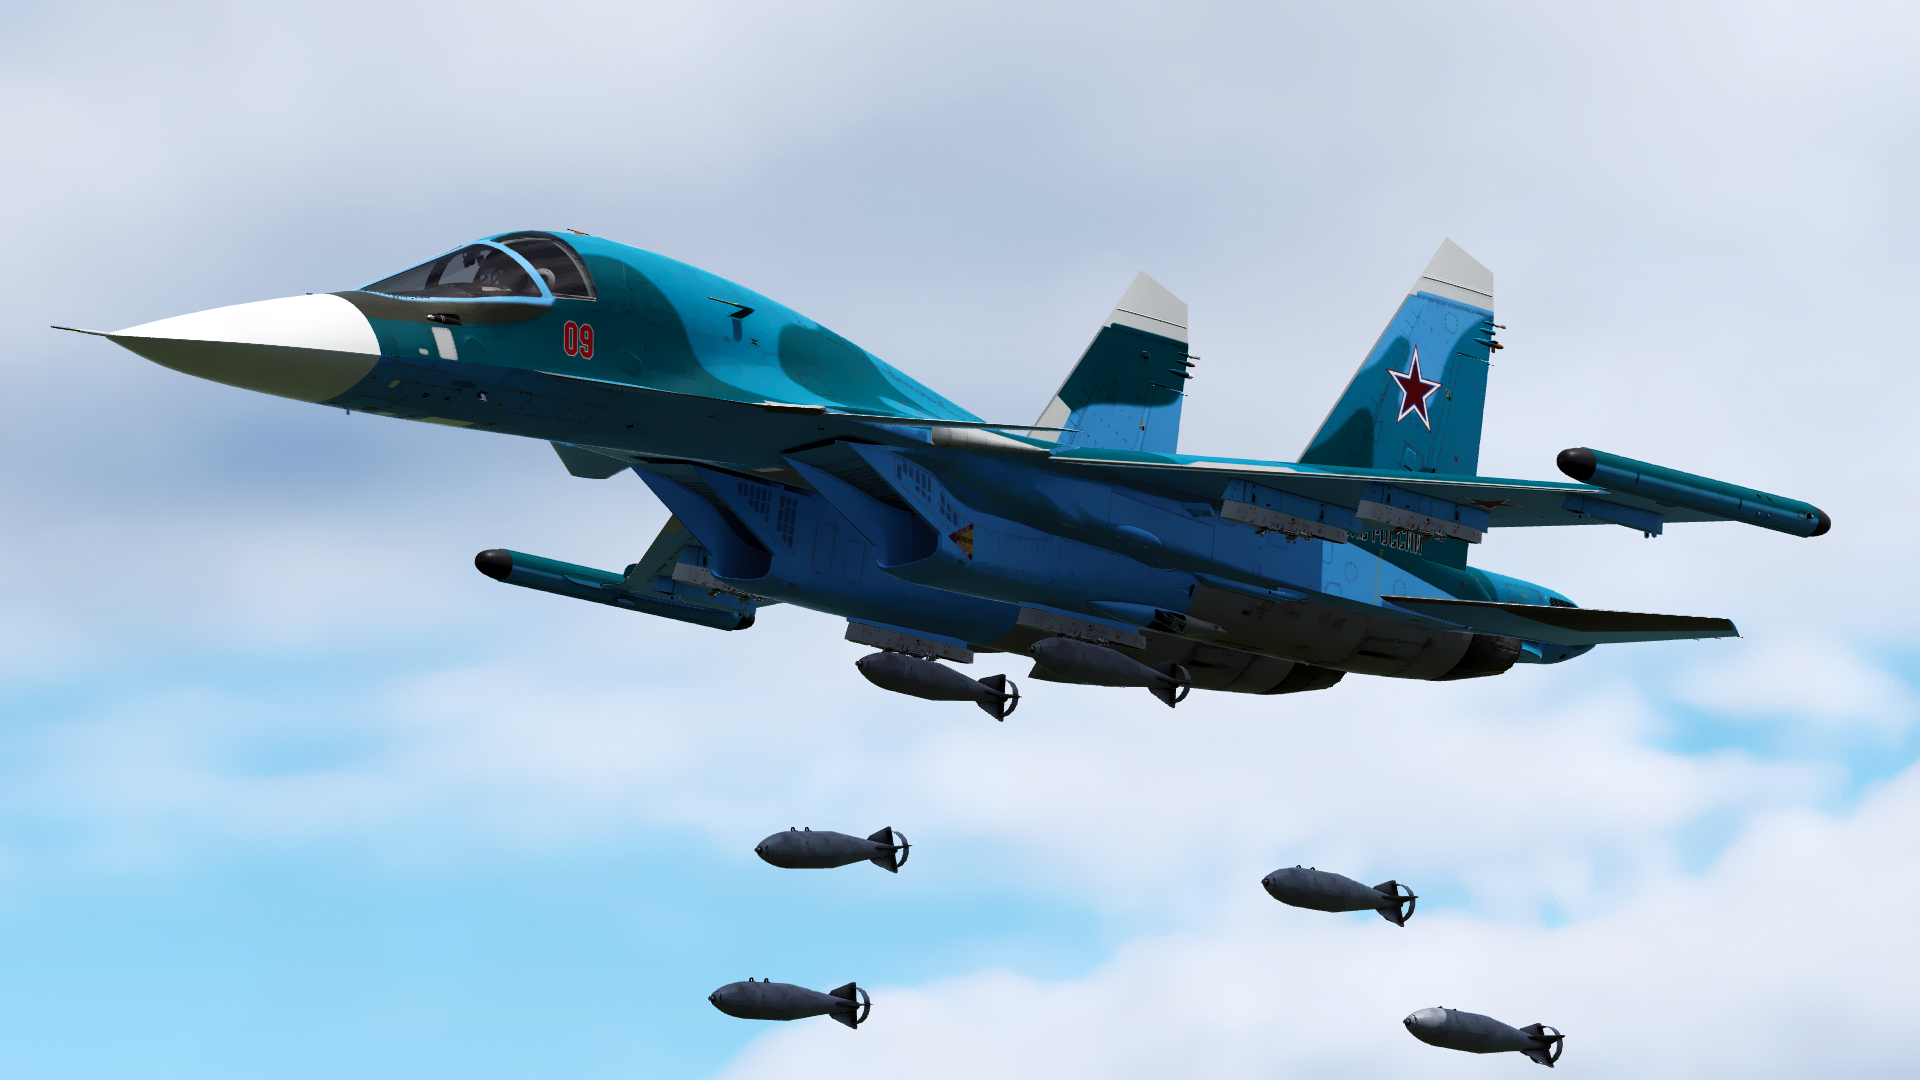 Окраска Су-34 (RF-95888) - Livery of Su-34 (RF-95888)